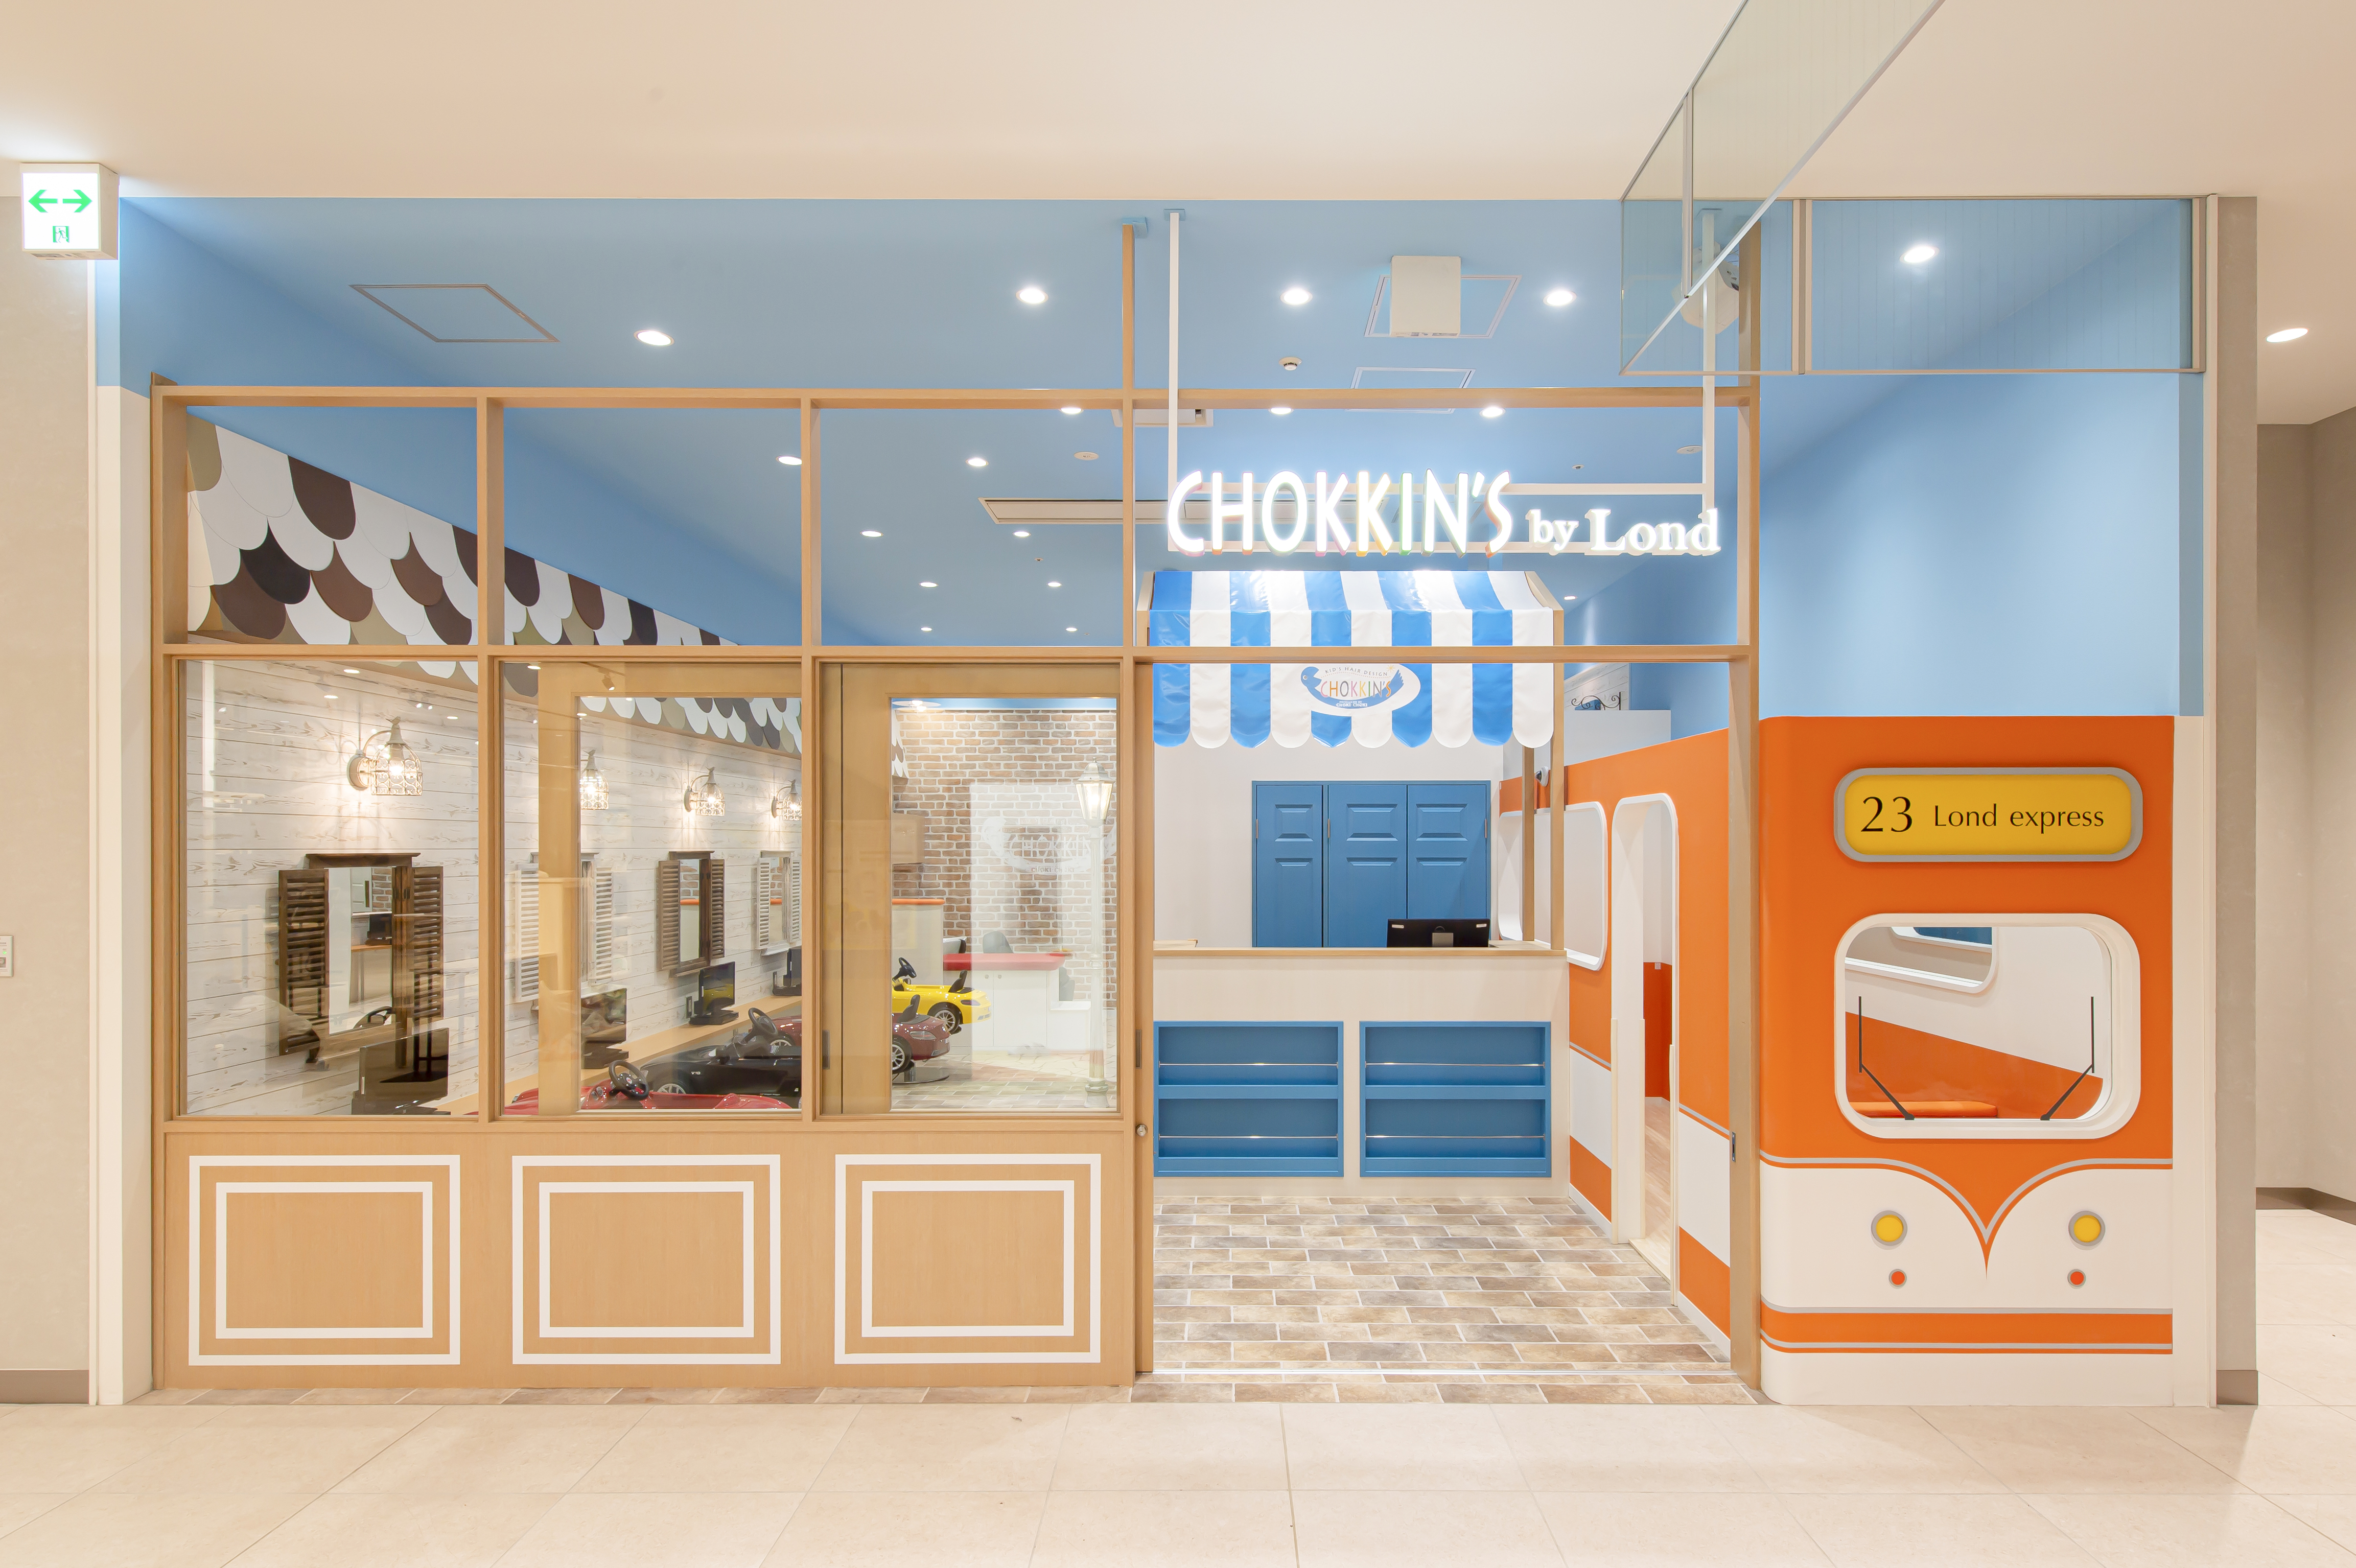 CHOKKIN'S by Lond 有明ガーデン店